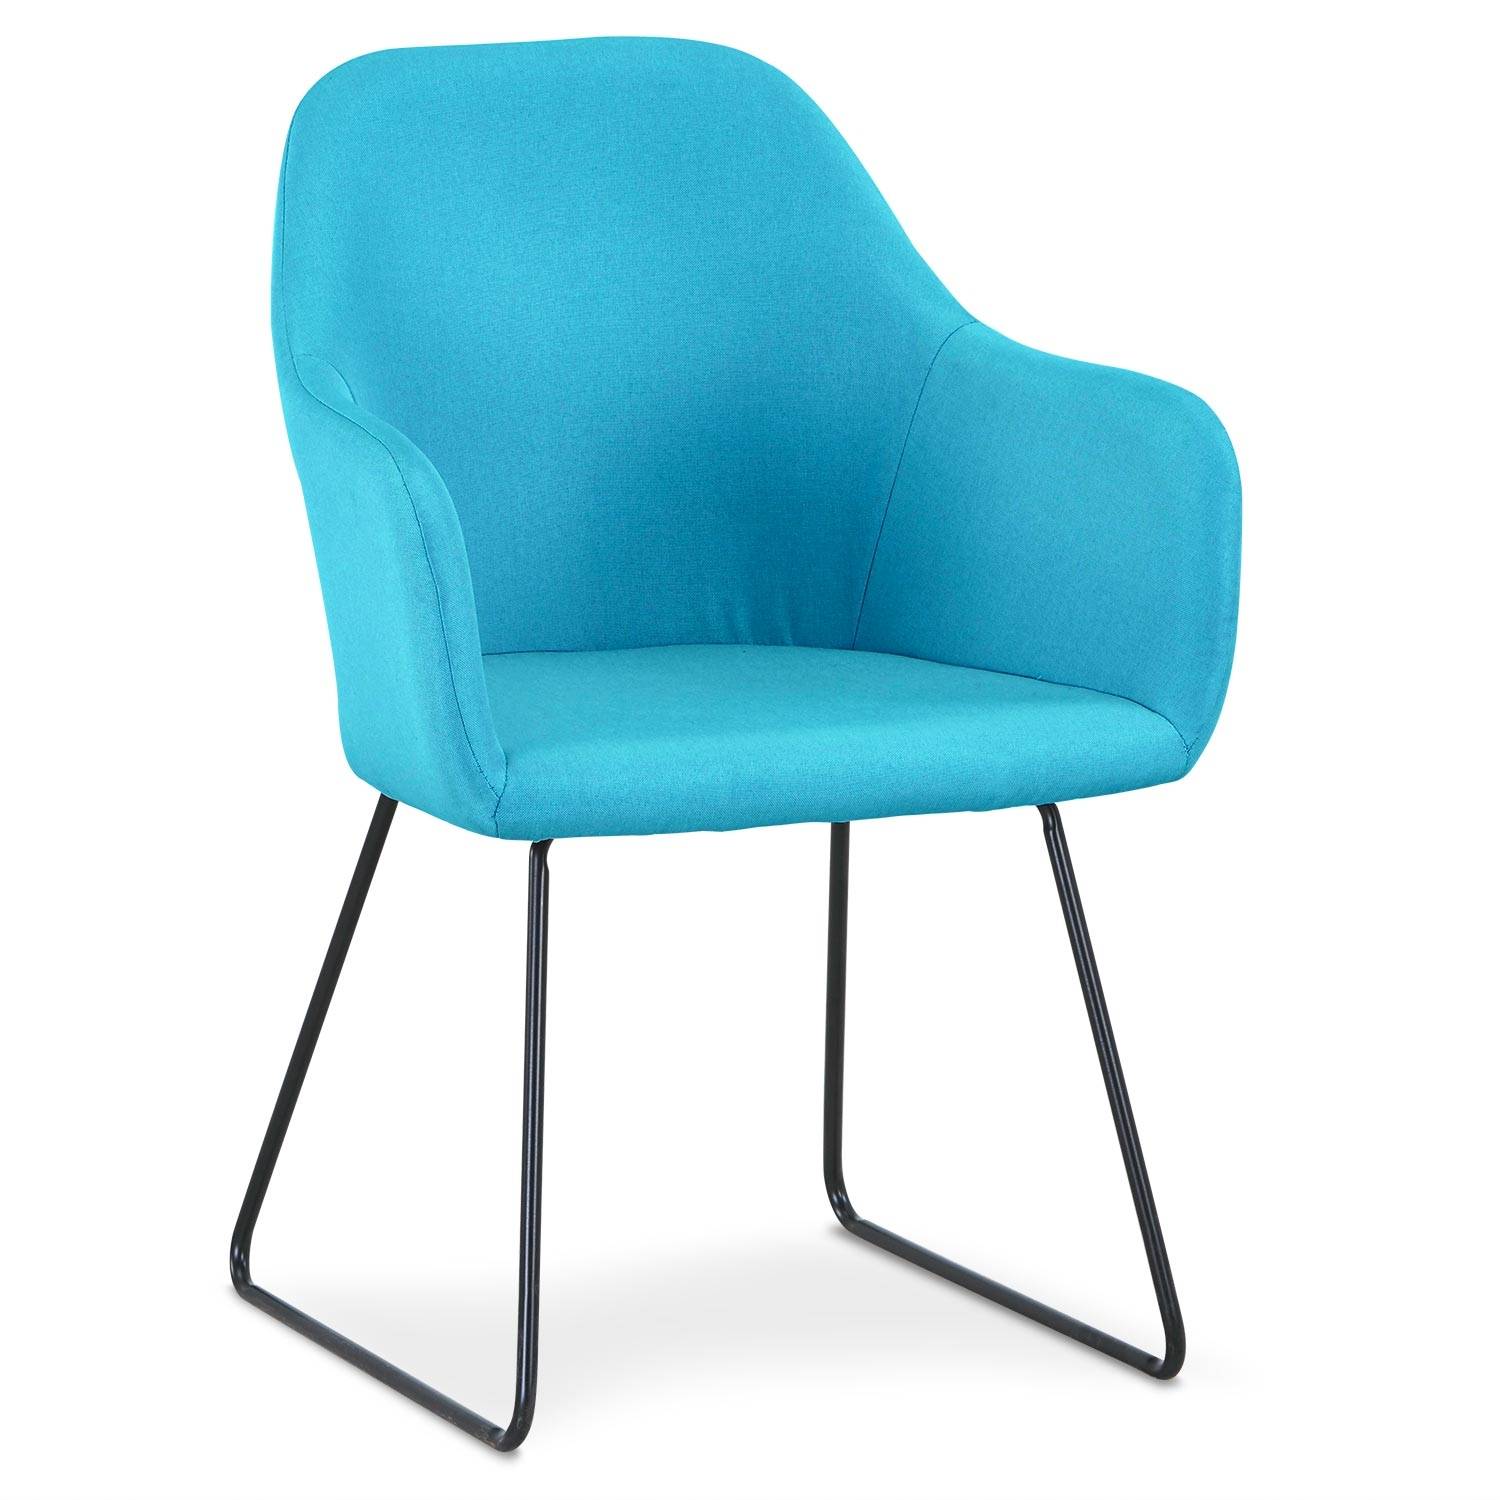 Epok stoel / fauteuil van zwart metaal en blauwe stof